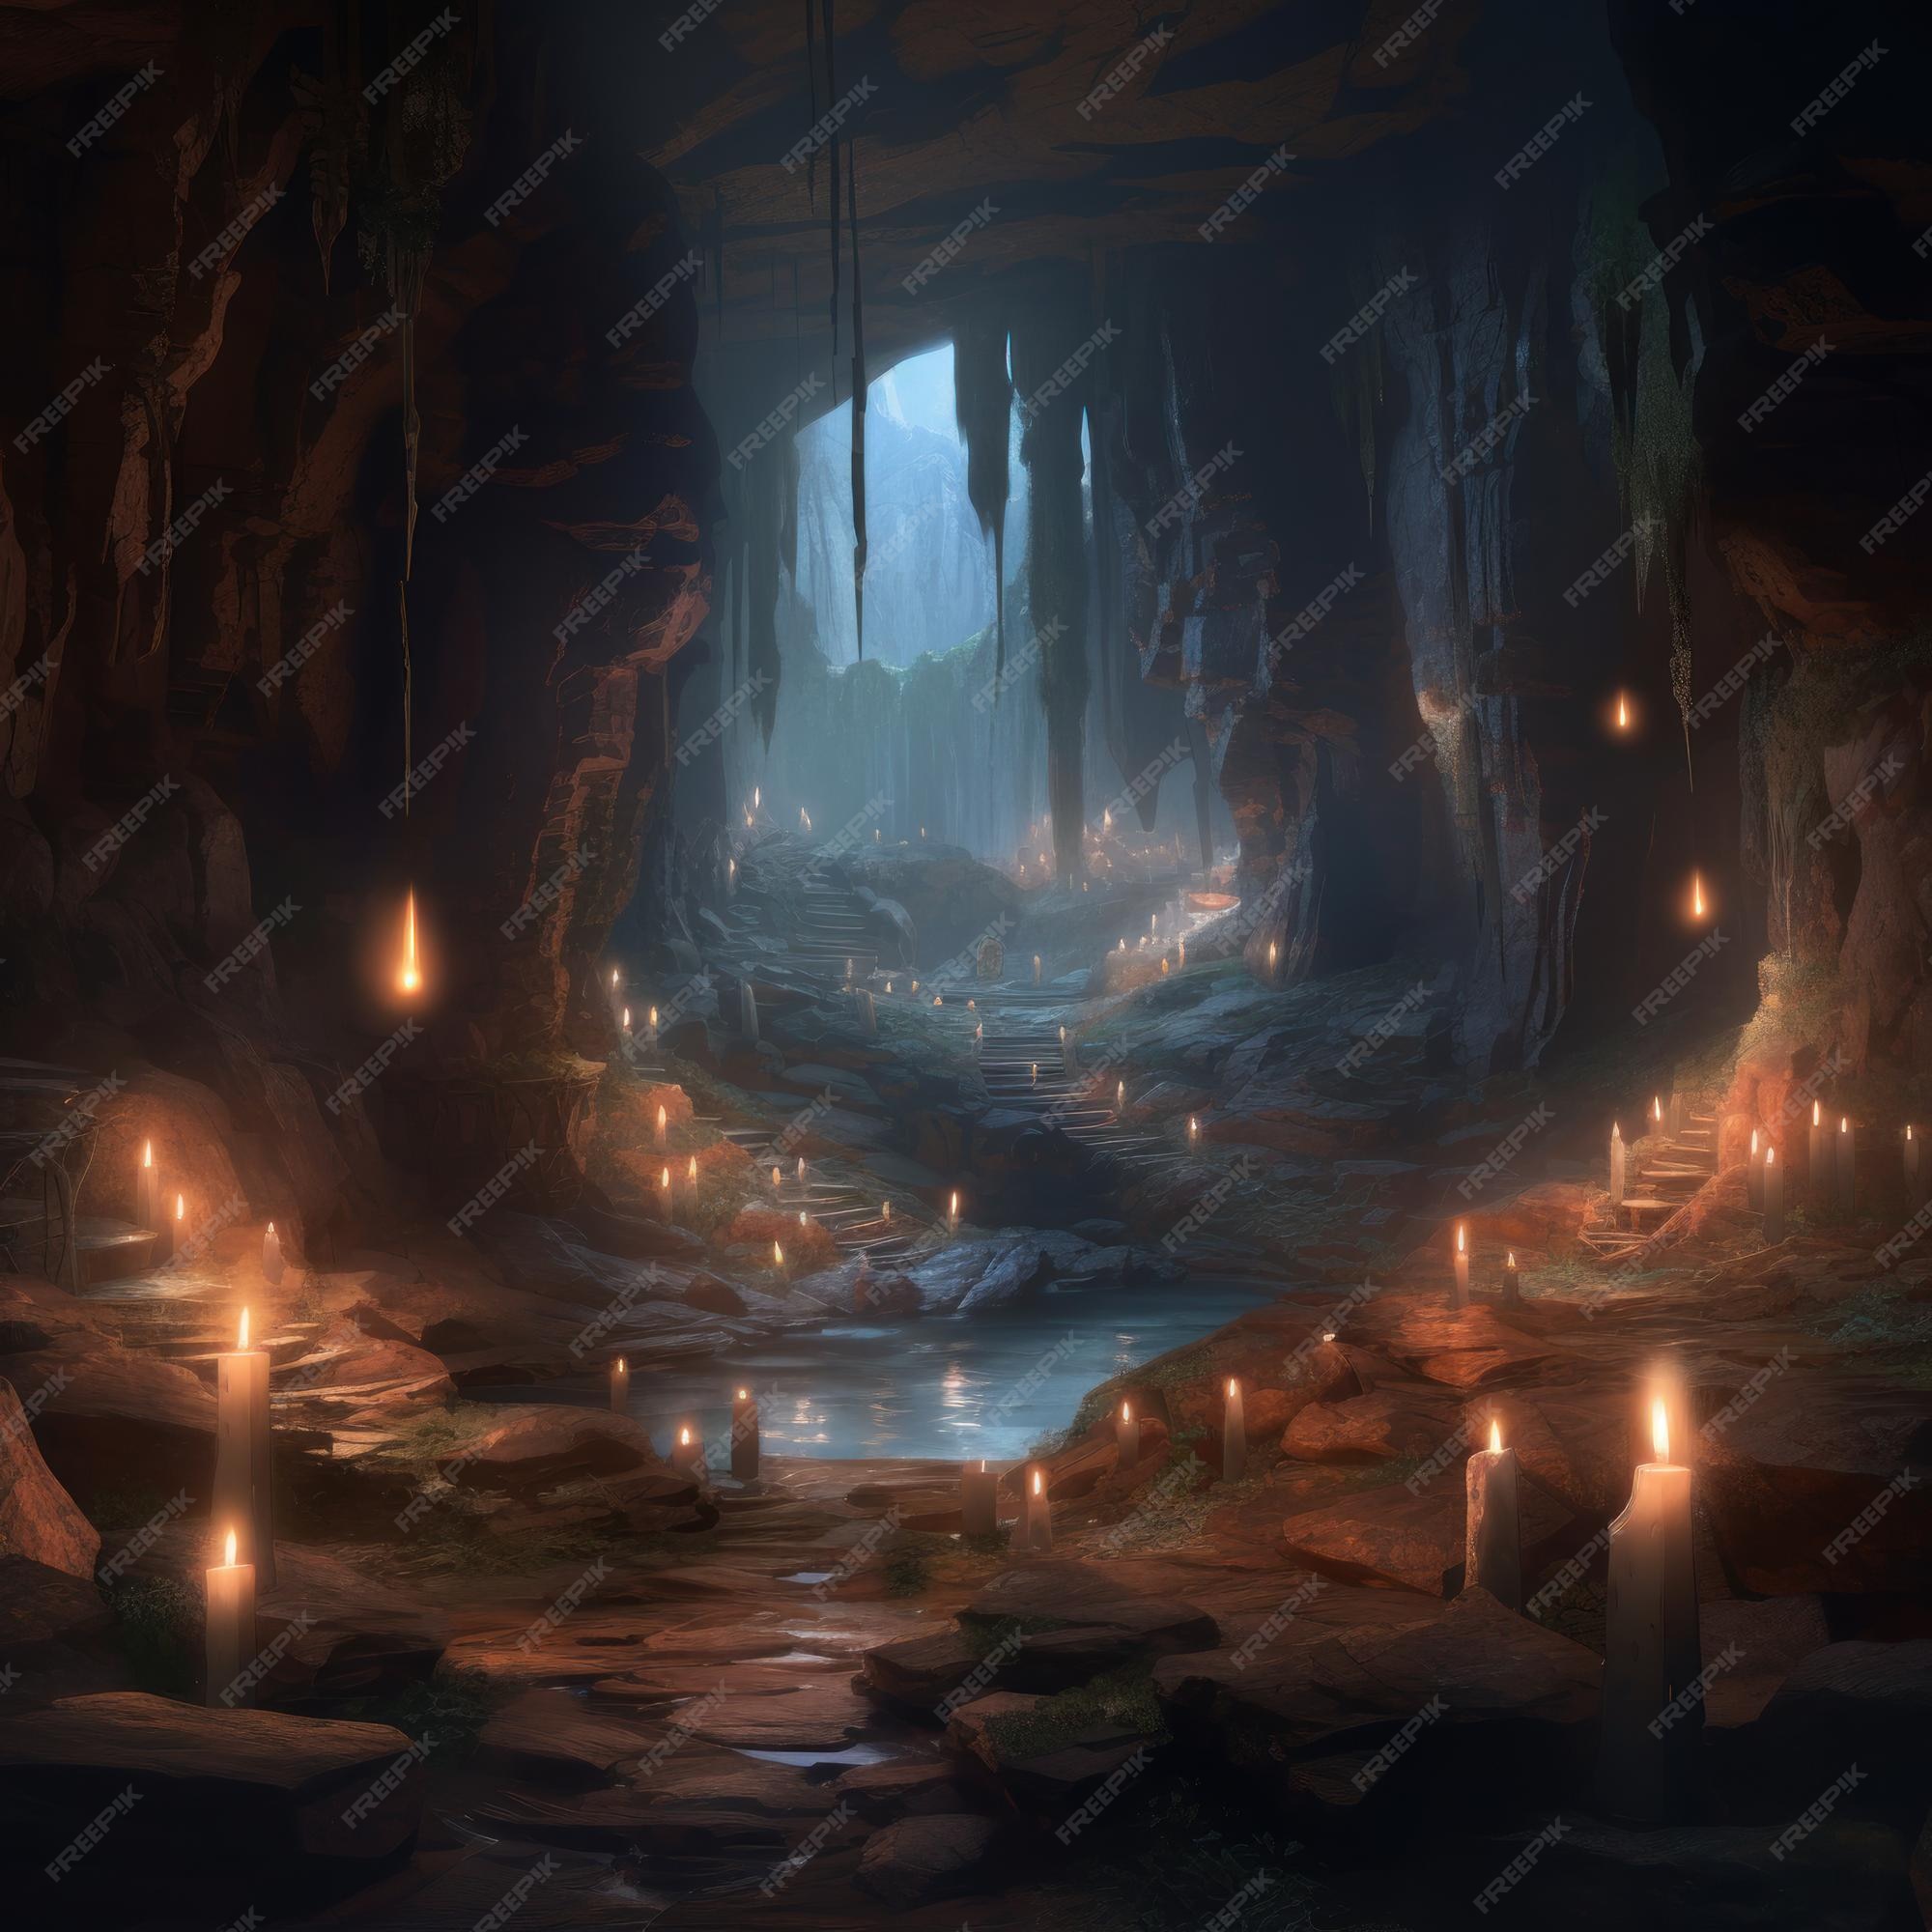 ろうそくが灯された暗い洞窟と、左に火のともったろうそく。